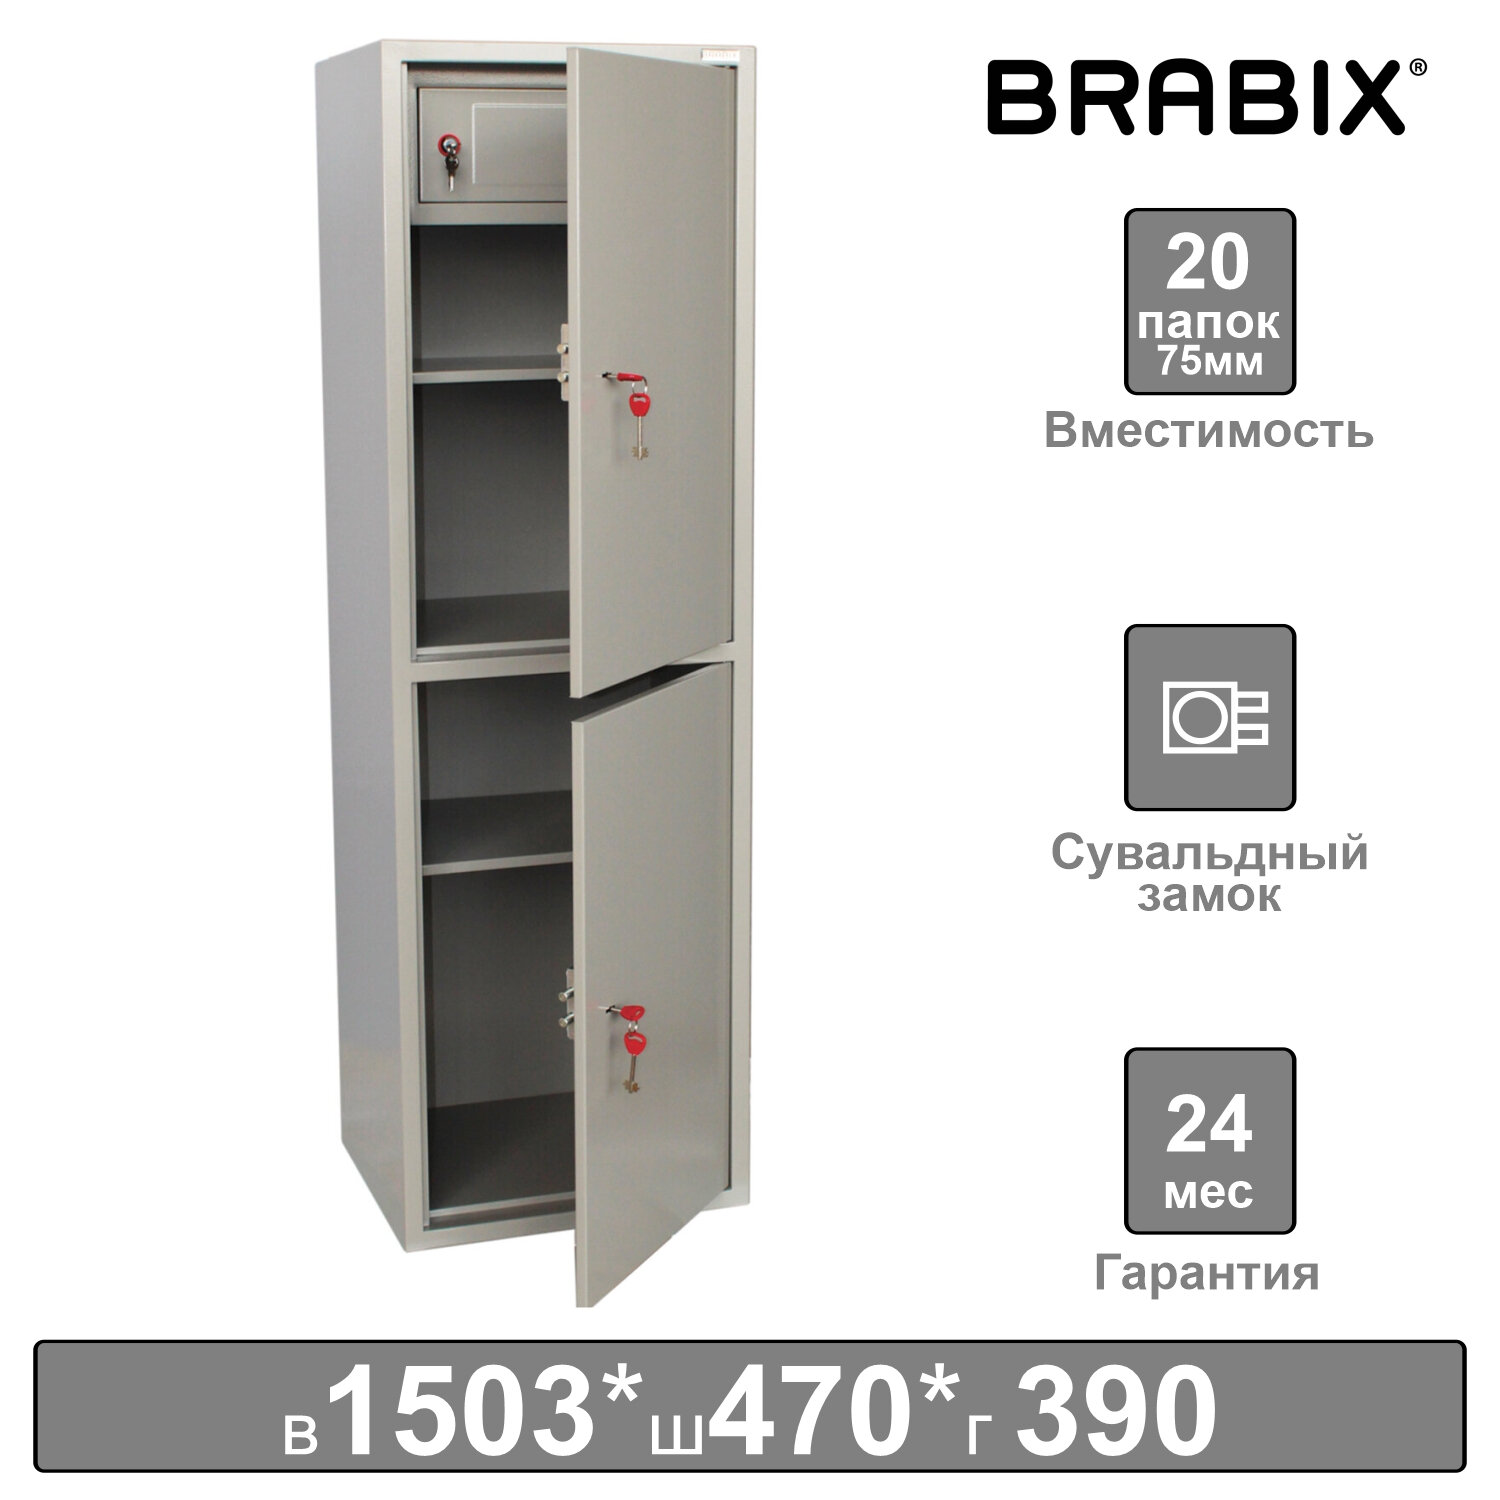 Brabix     BRABIX KBS-032, 1503470390 , 37 , , , 291157